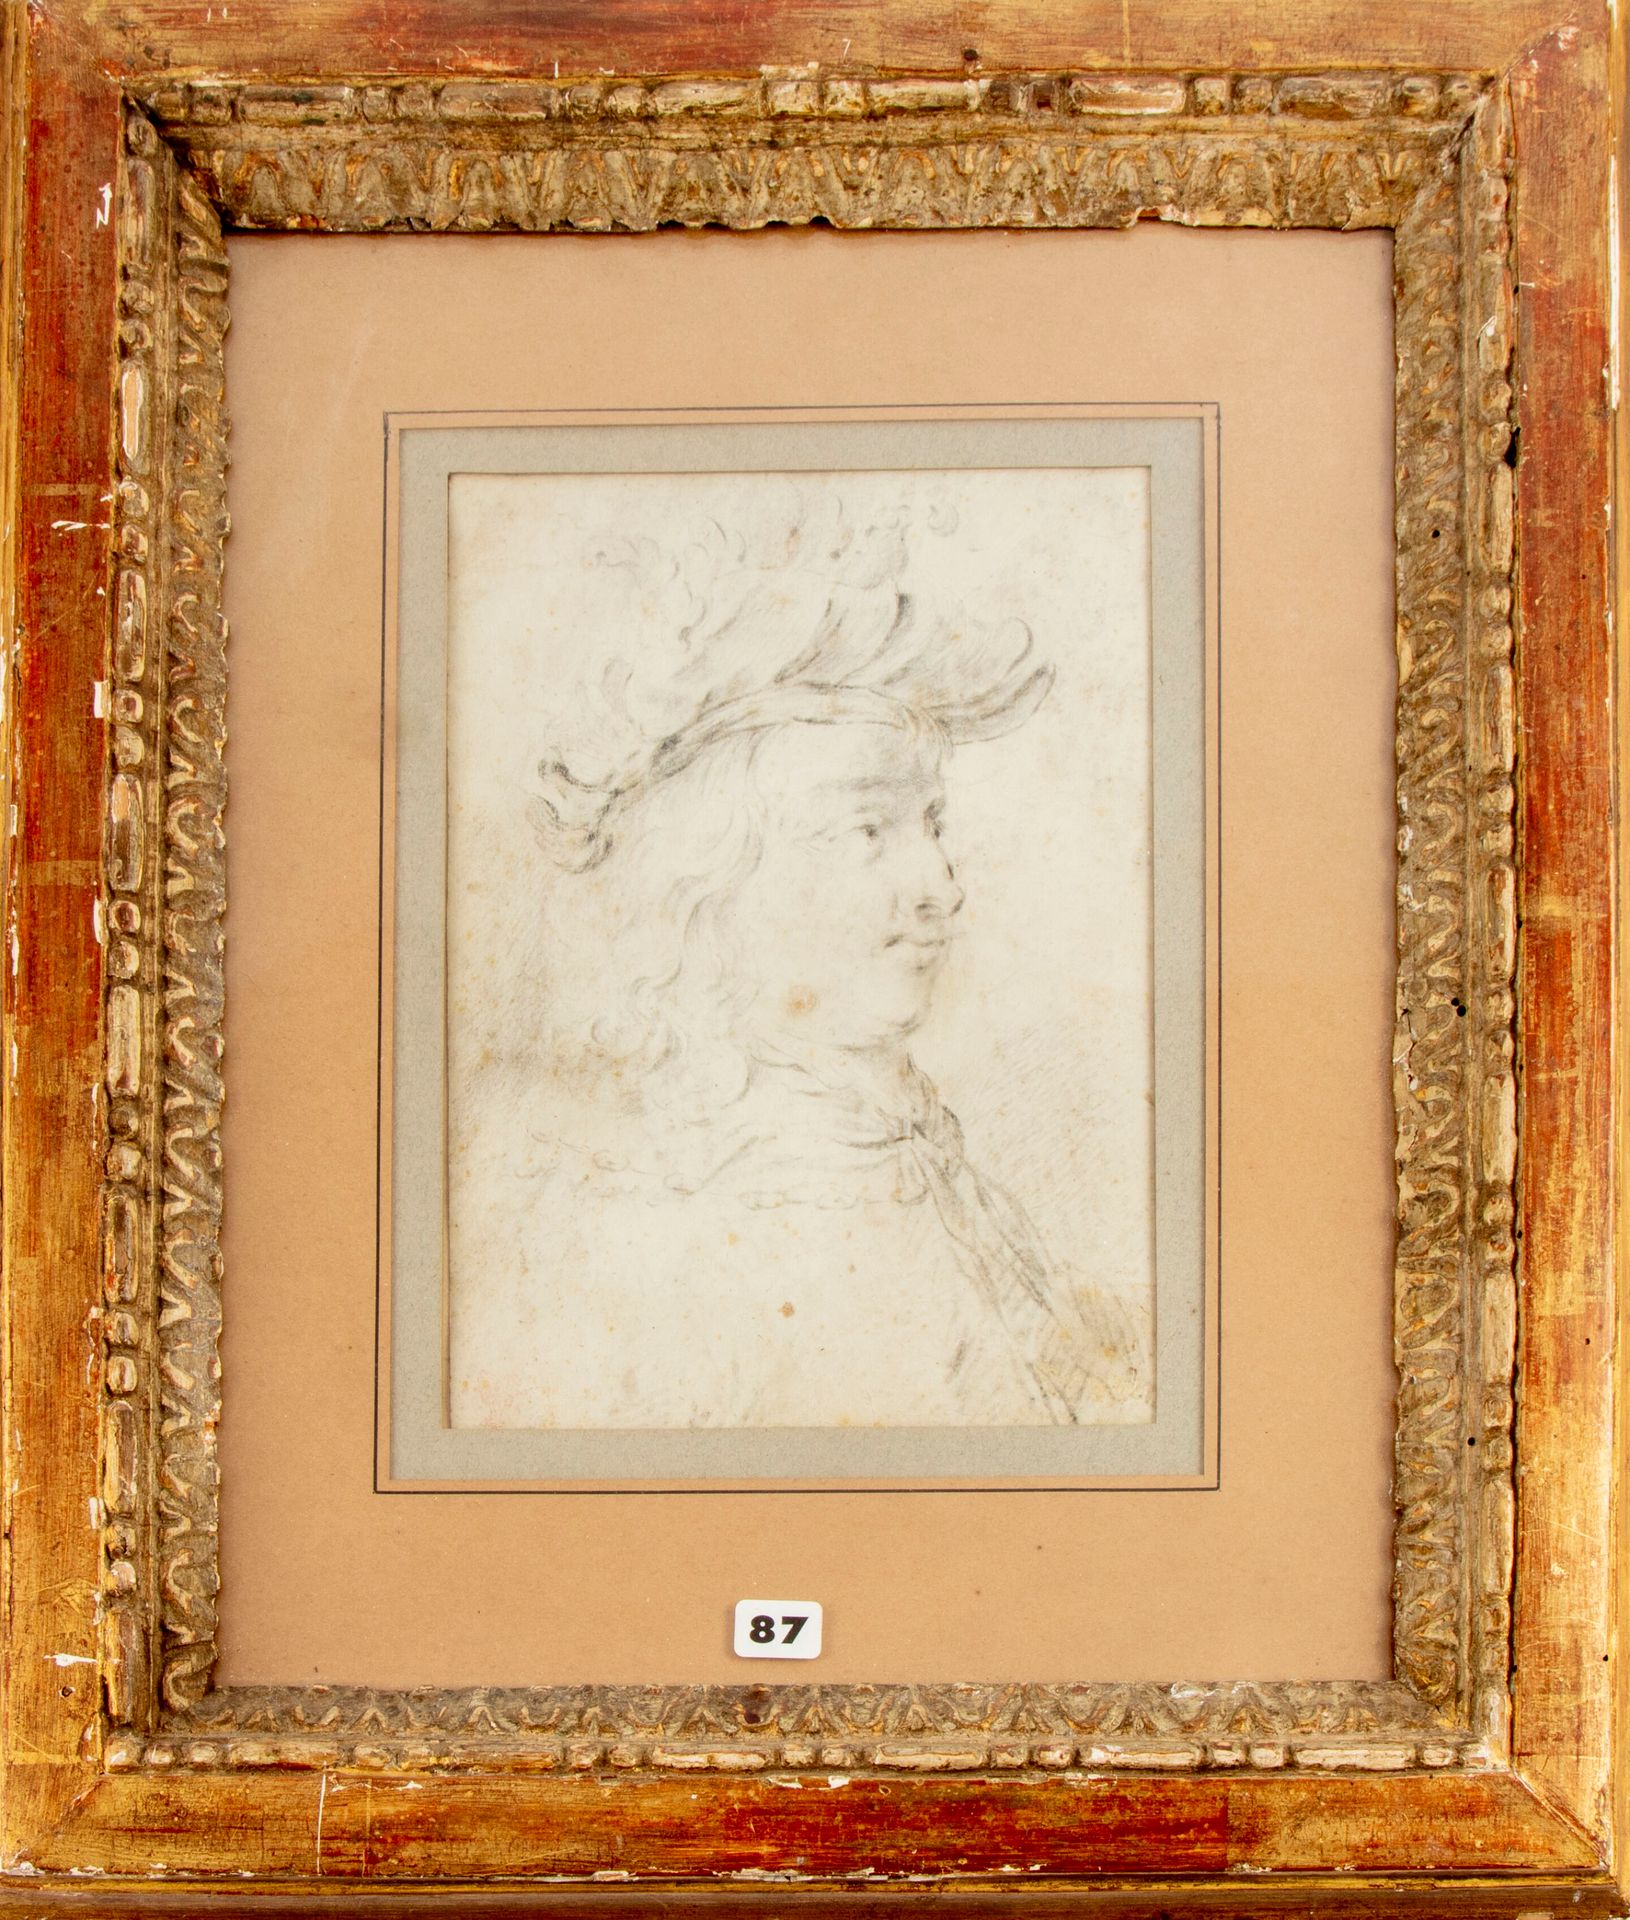 ECOLE DU NORD 17世纪的北方学校--归属于Frans VAN MIERIS的作品

戴着羽毛帽的男子肖像

铅笔画

20 x 15厘米

潮湿和&hellip;